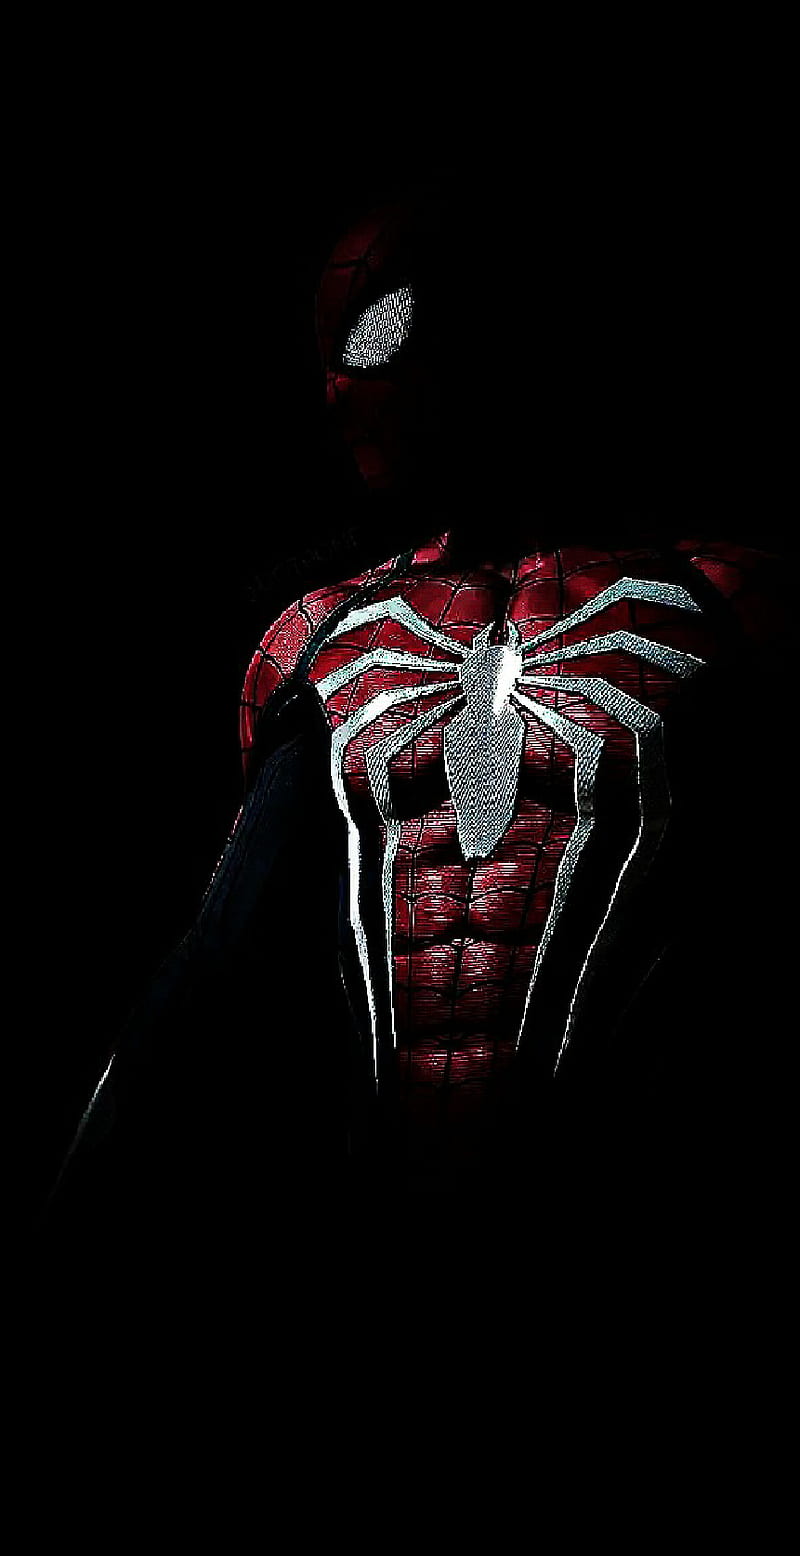 dark spiderman